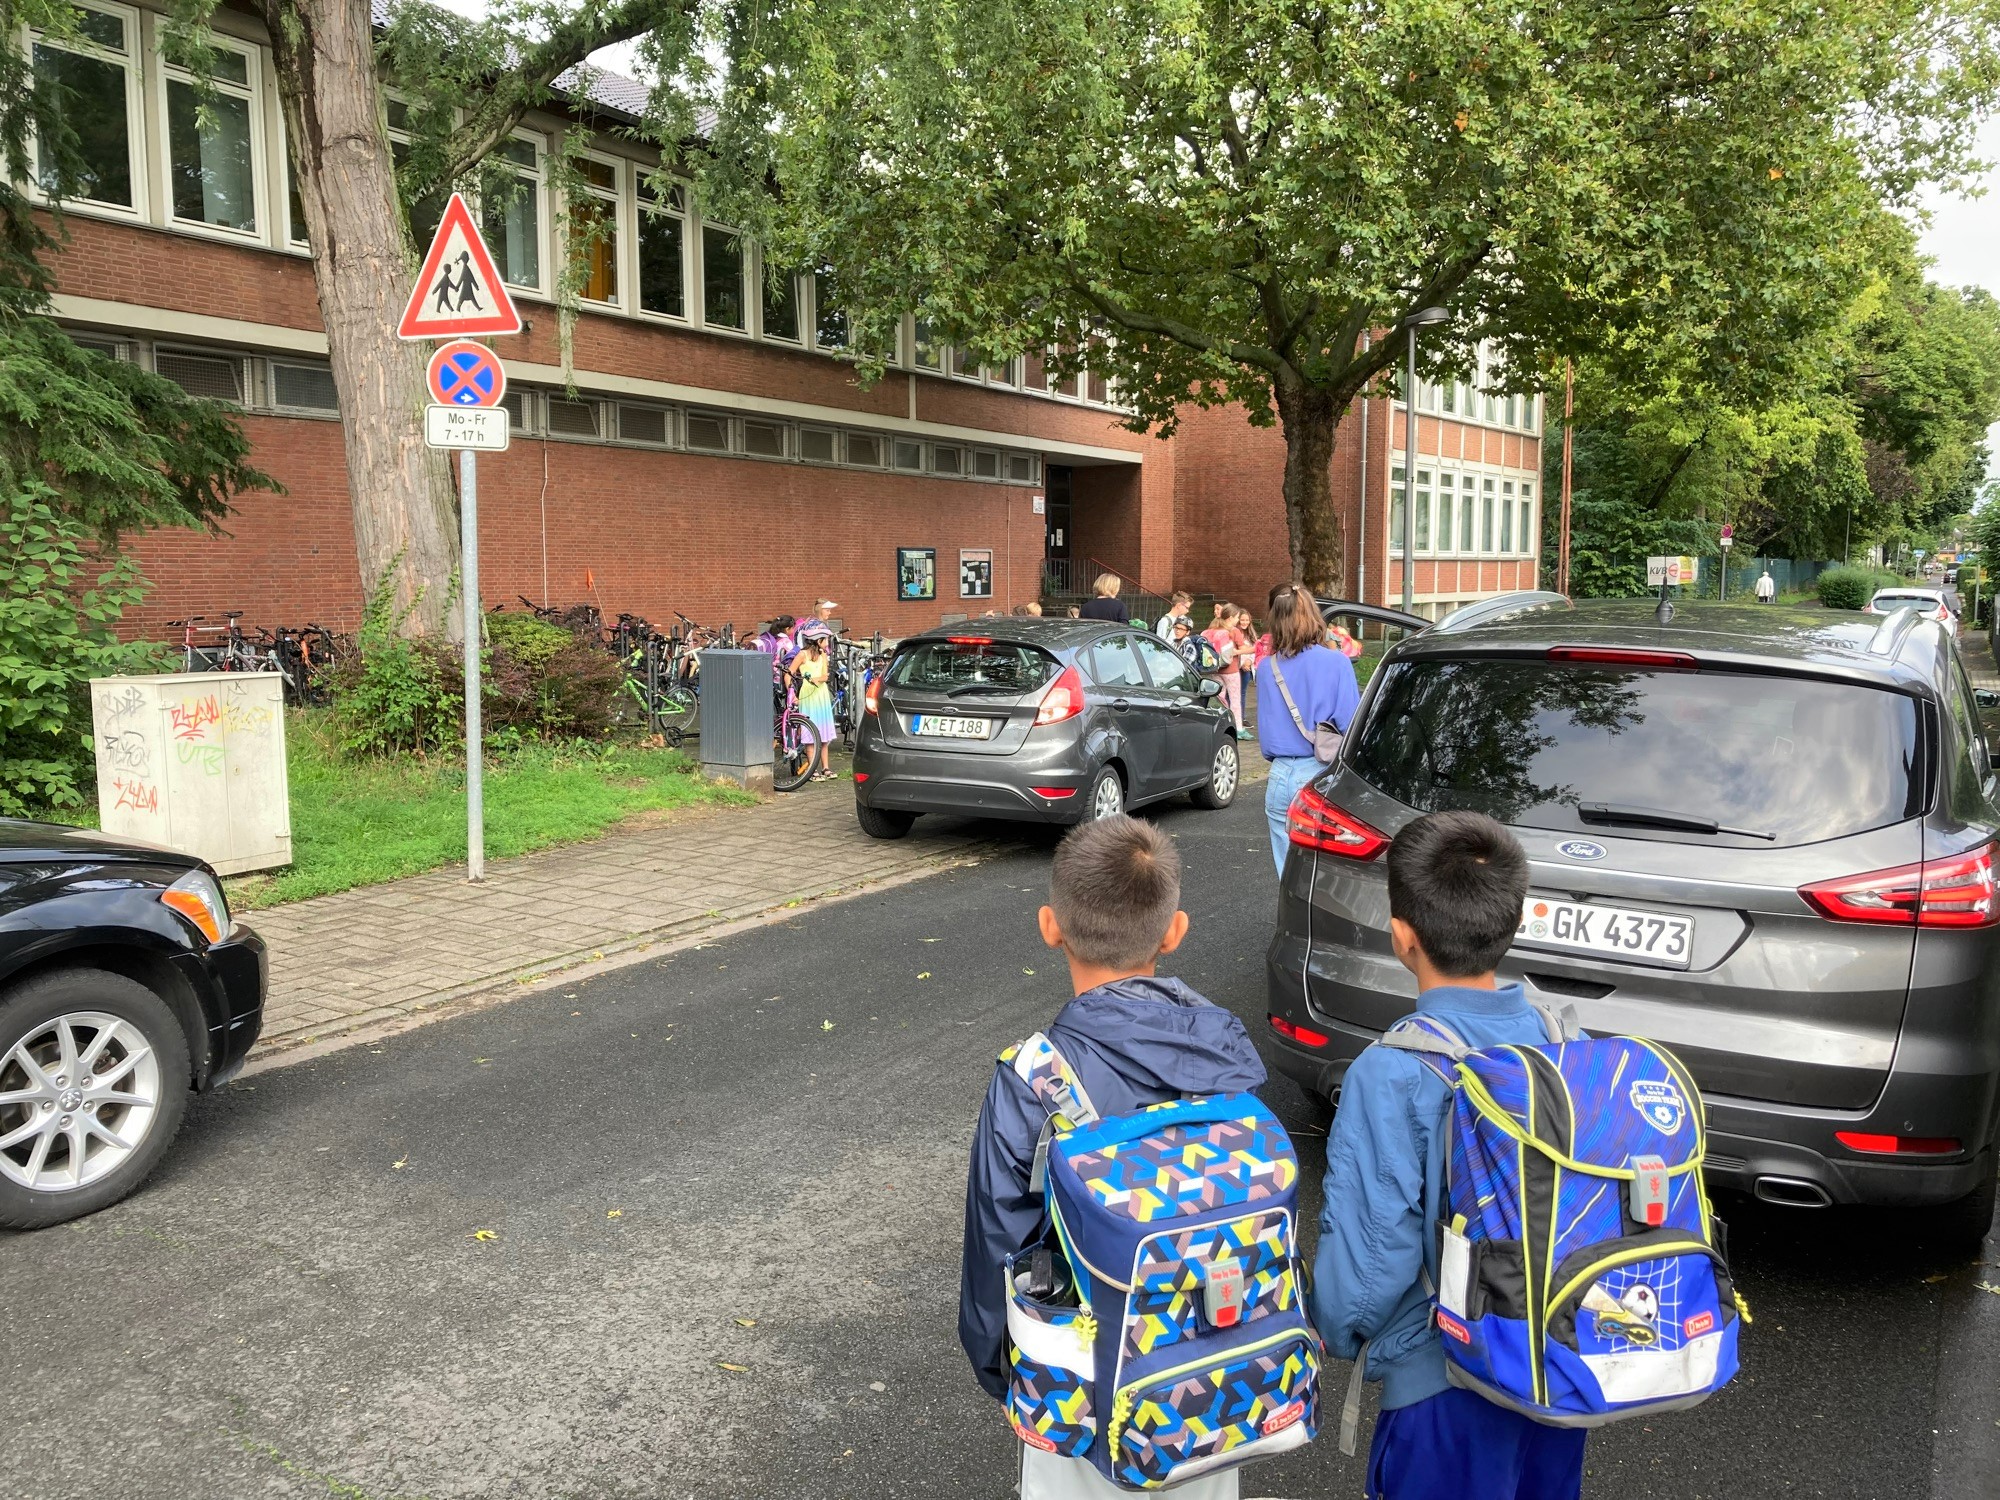 Kinder auf dem Weg in die Schule